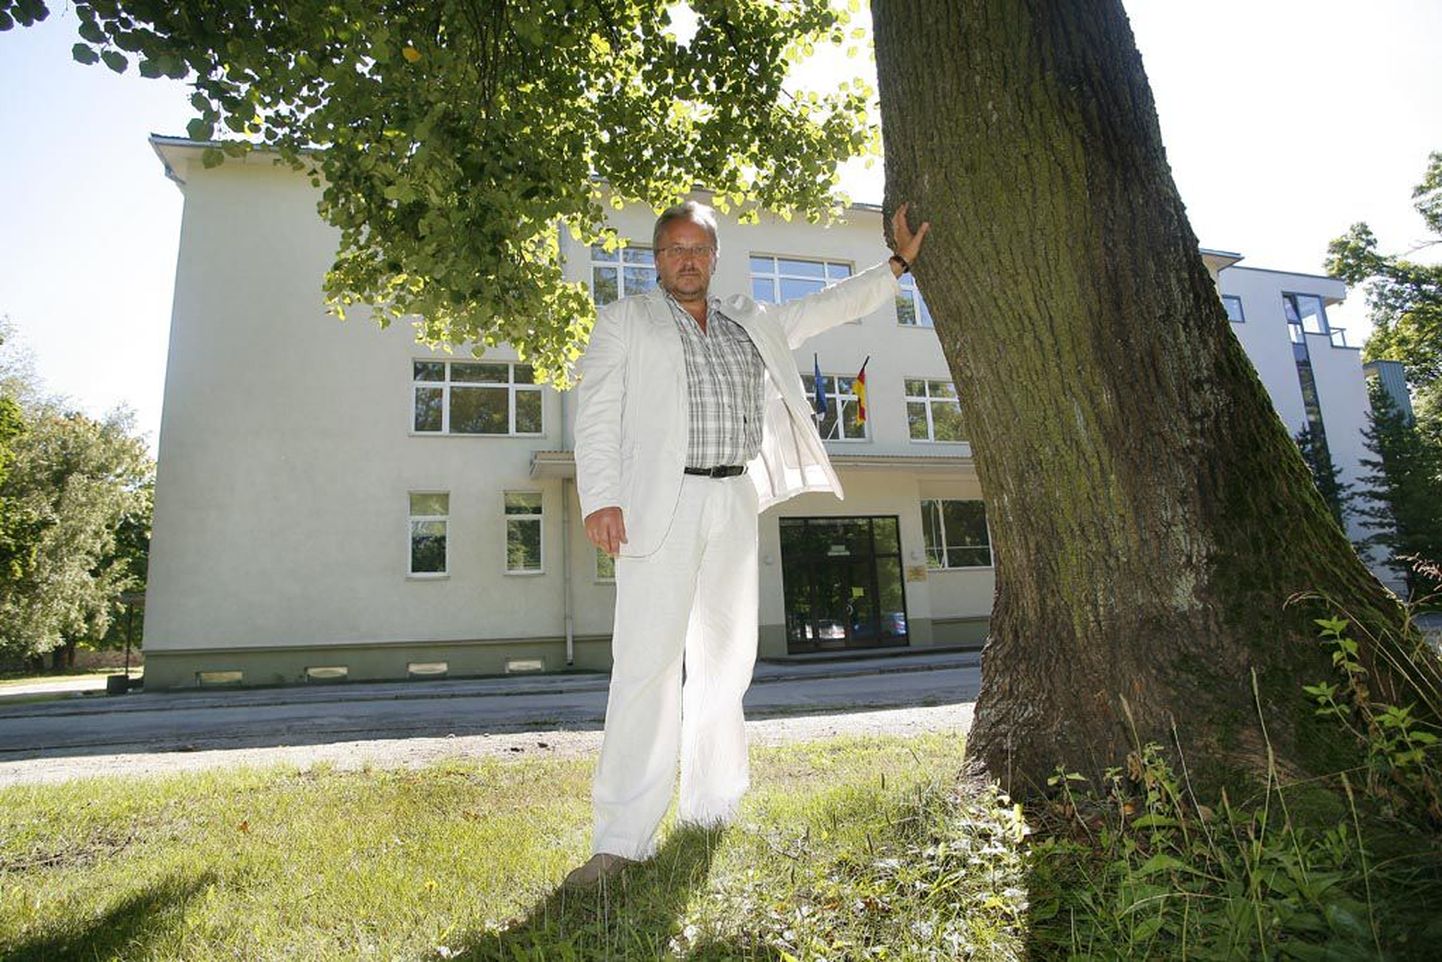 Üks maas - üks veel jäänud. Pärnu Saksa tehnoloogiakooli direktor Indrek Alekõrs pelgab, et koolimaja ees ähvardavalt kõrguv veteranpuu sügistorme üle ei ela.